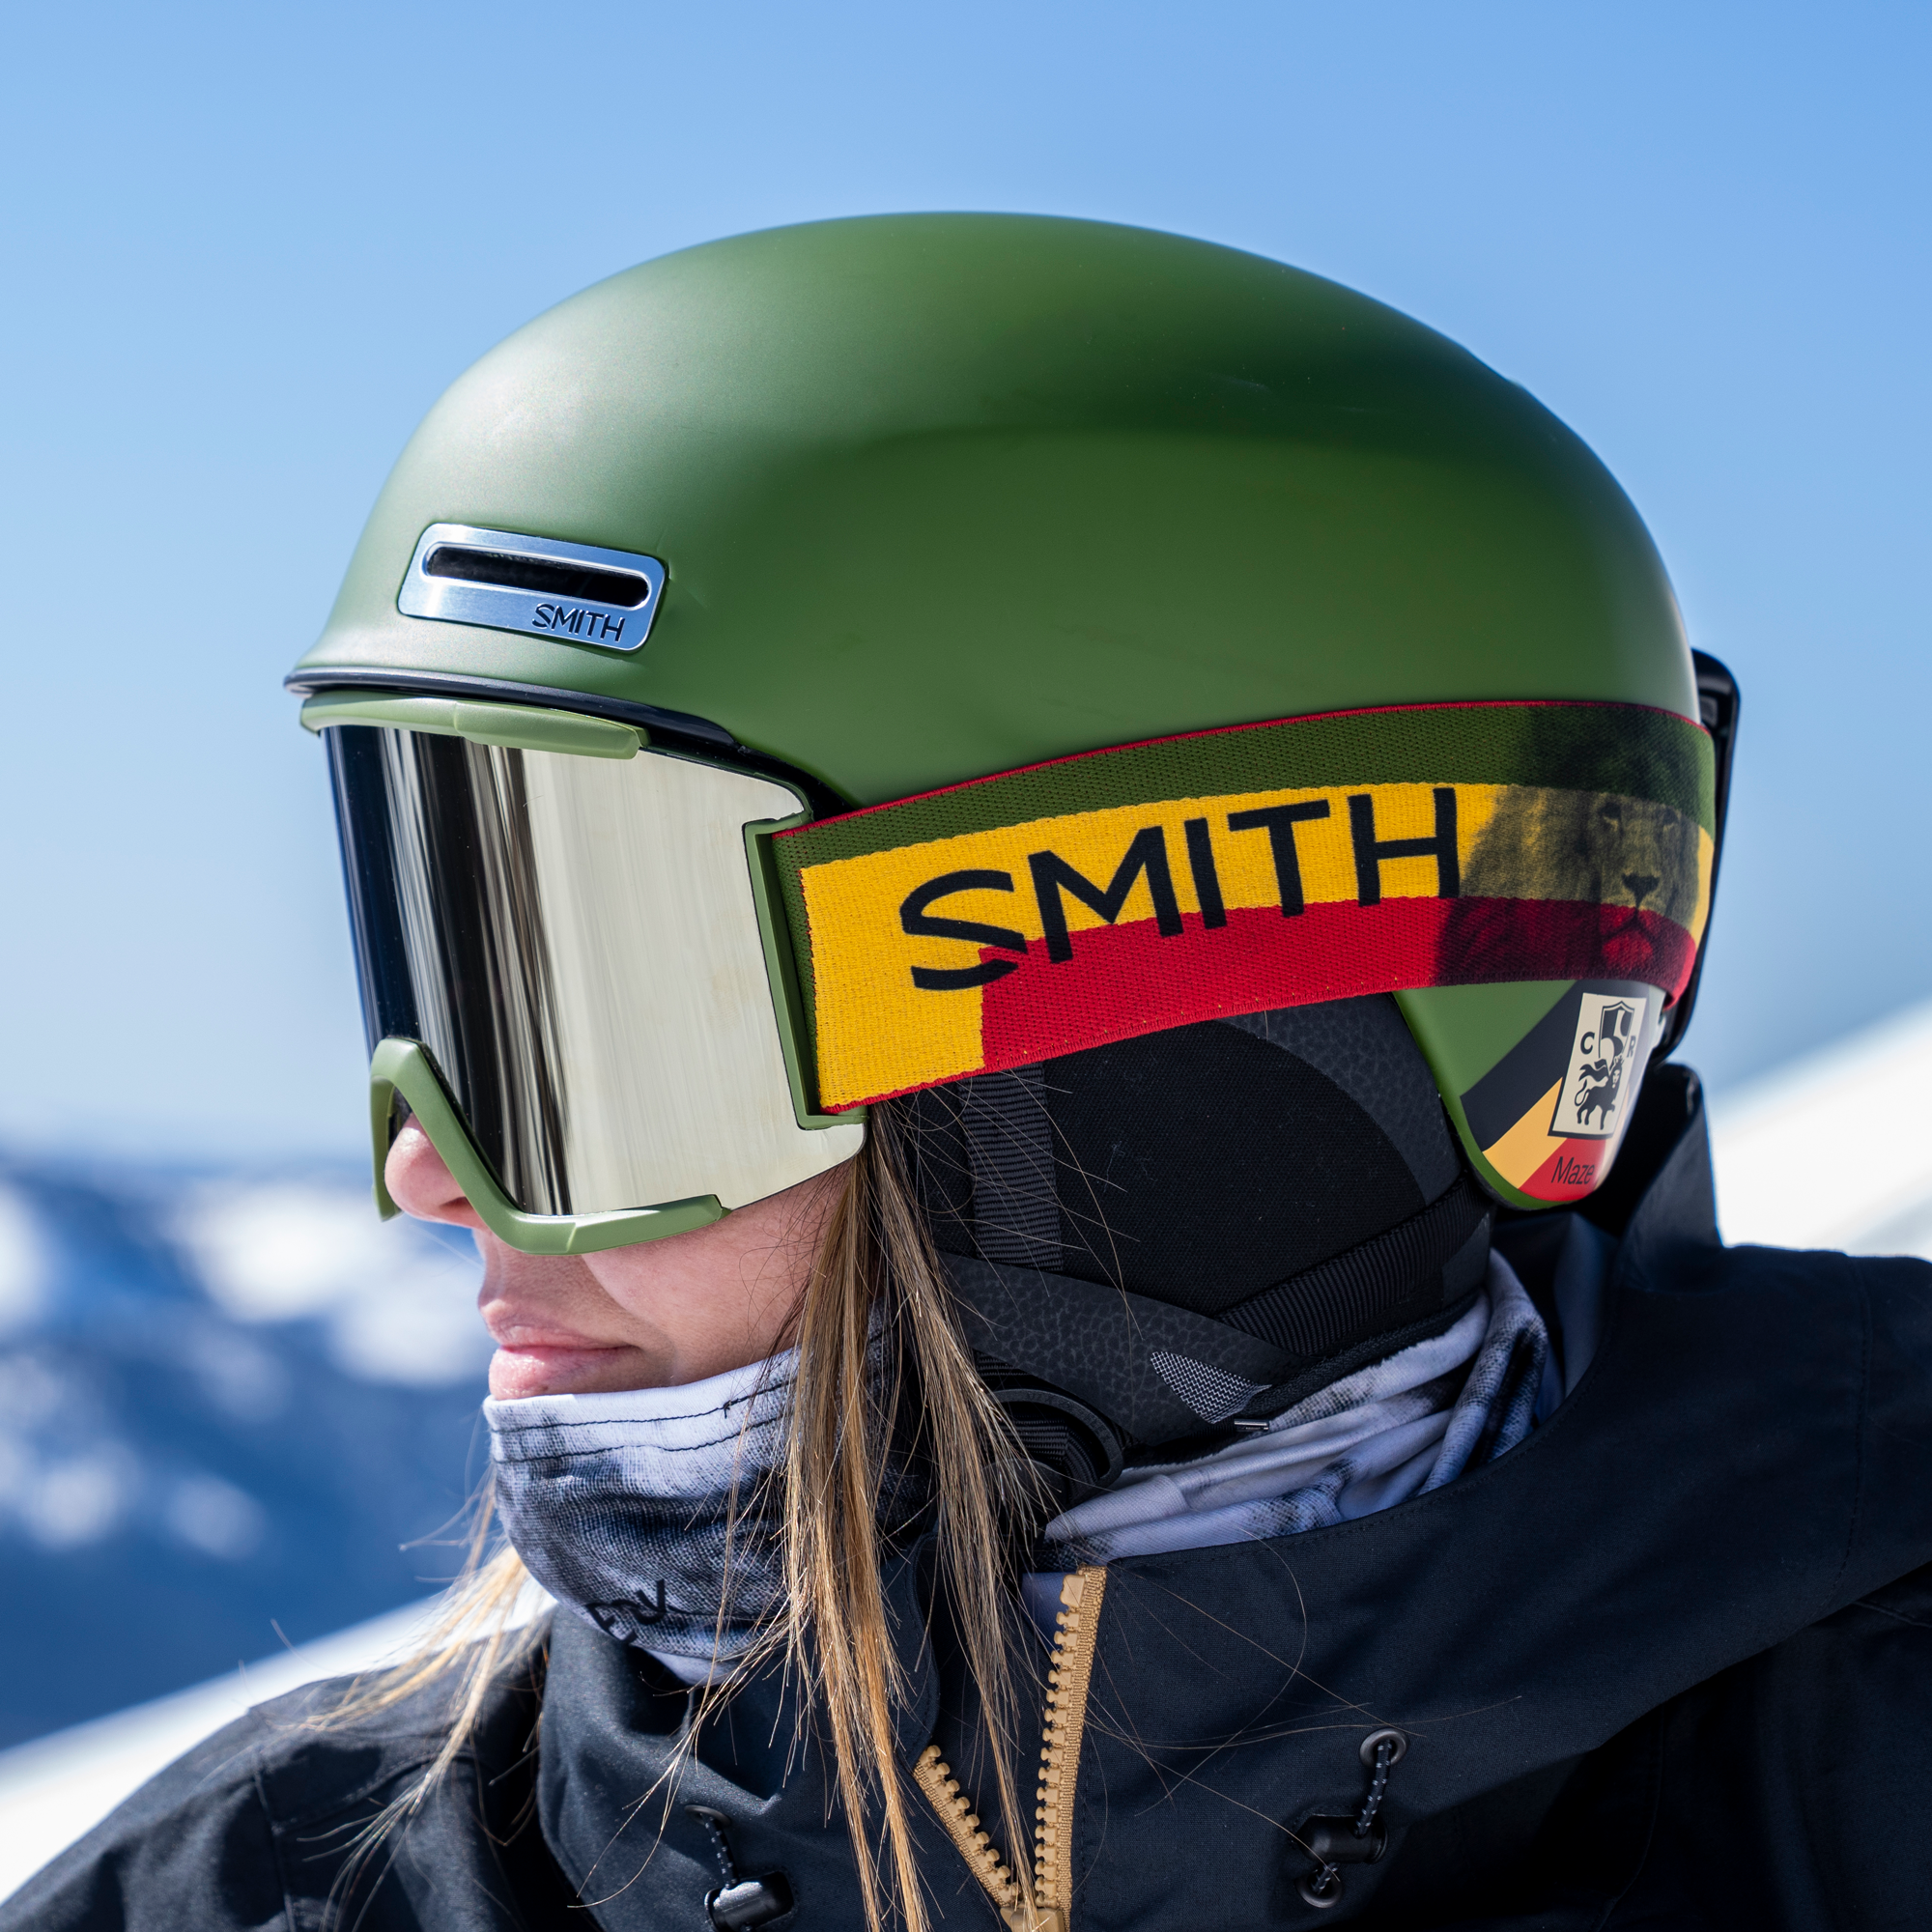 SMITH スキーヘルメット新品未使用 - スノーボード